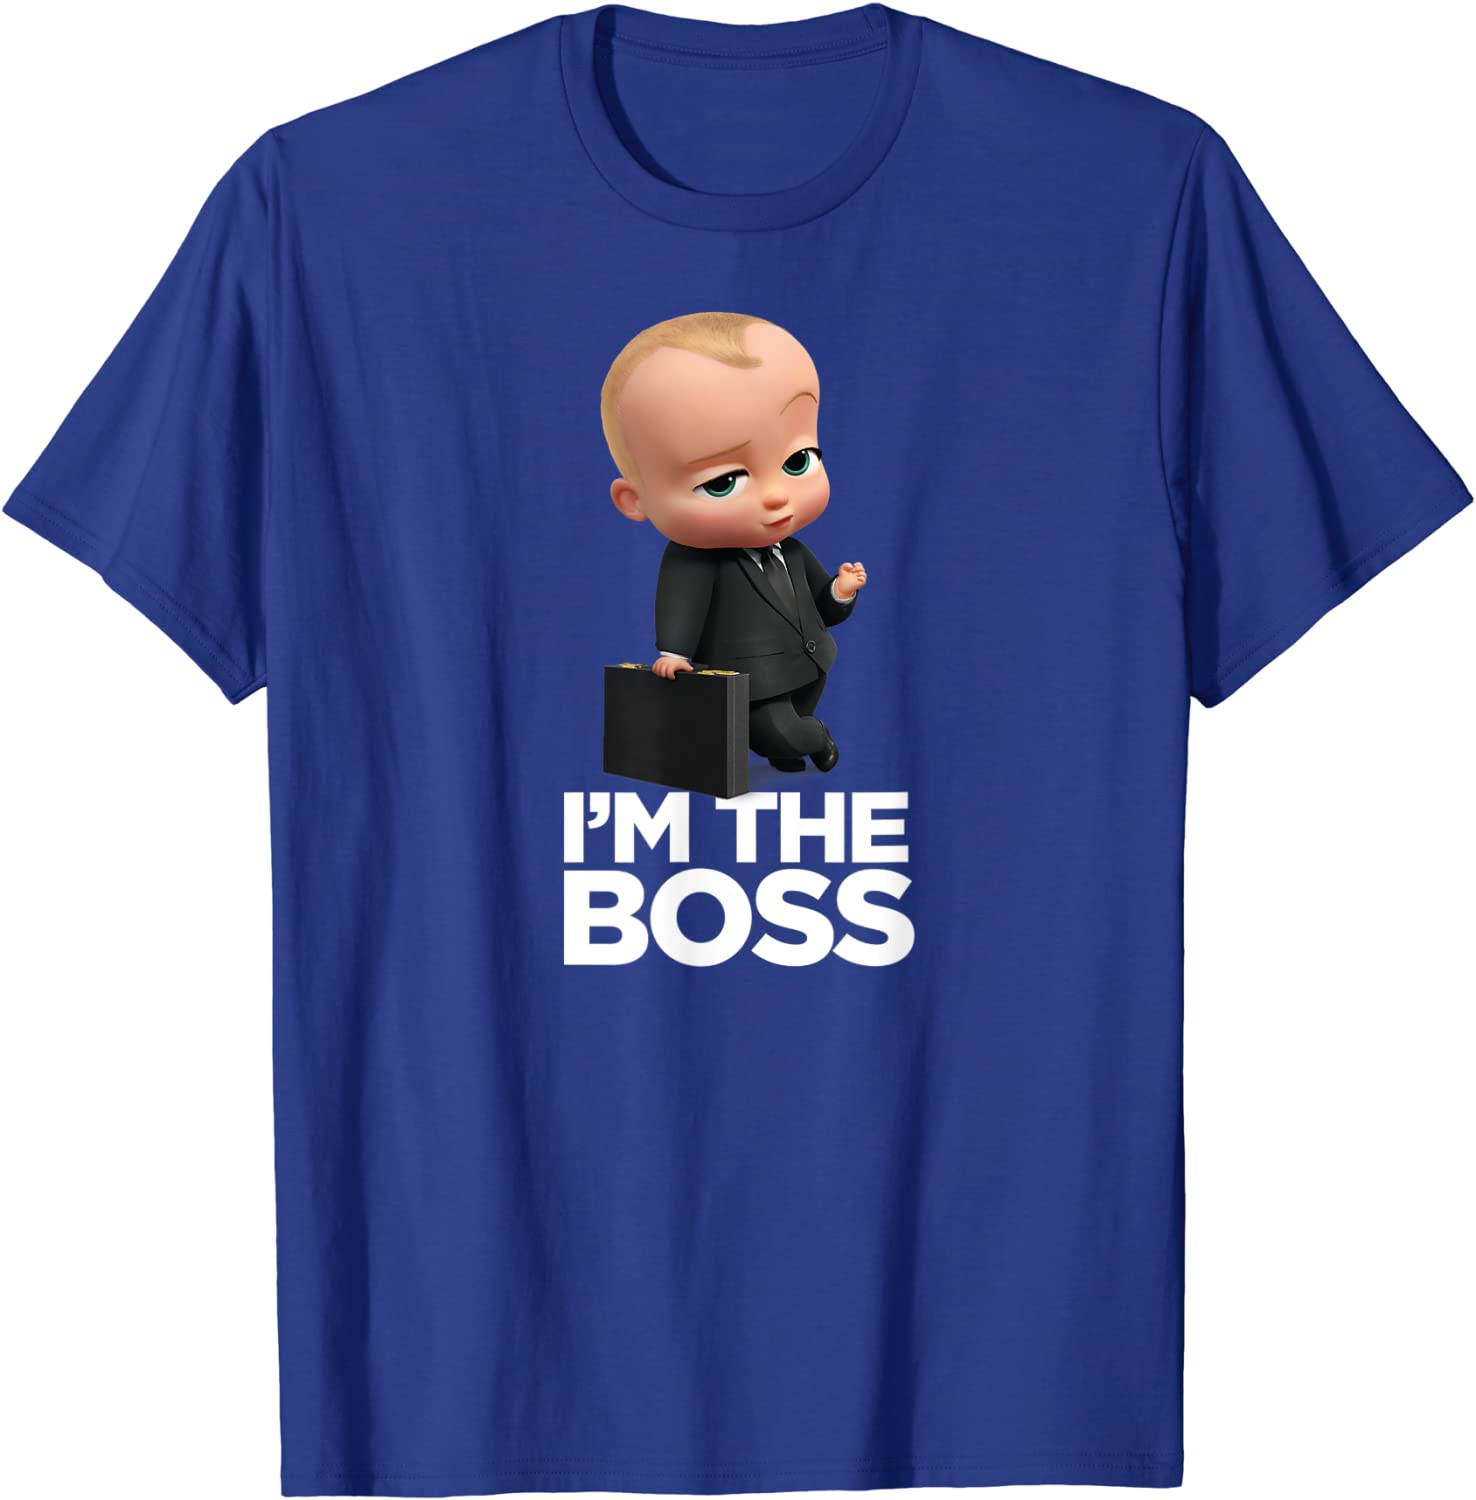 The Boss TShirt